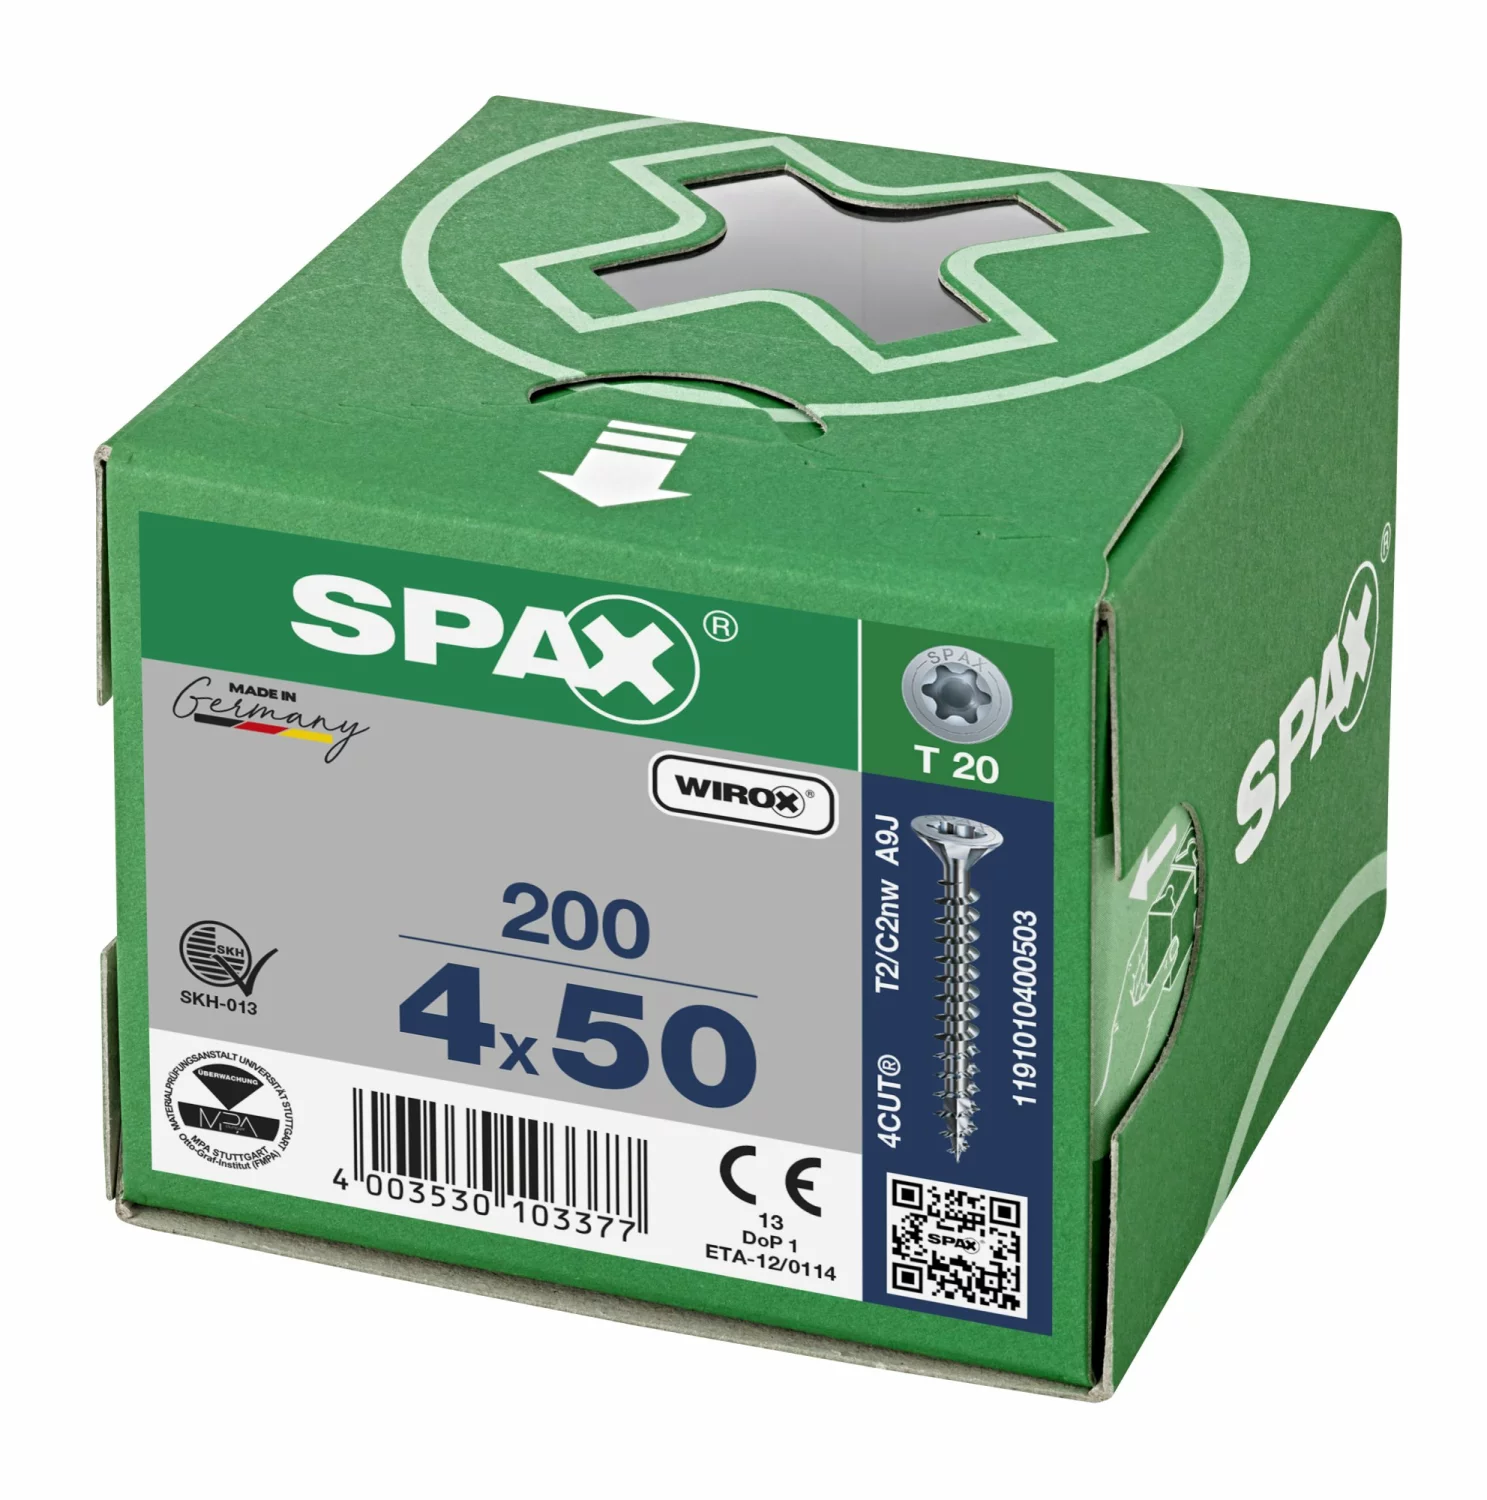 SPAX 1191010400503 Universele schroef, Verzonken kop, 4 x 50, Voldraad, T-STAR plus TX20 - WIROX - 200 stuks